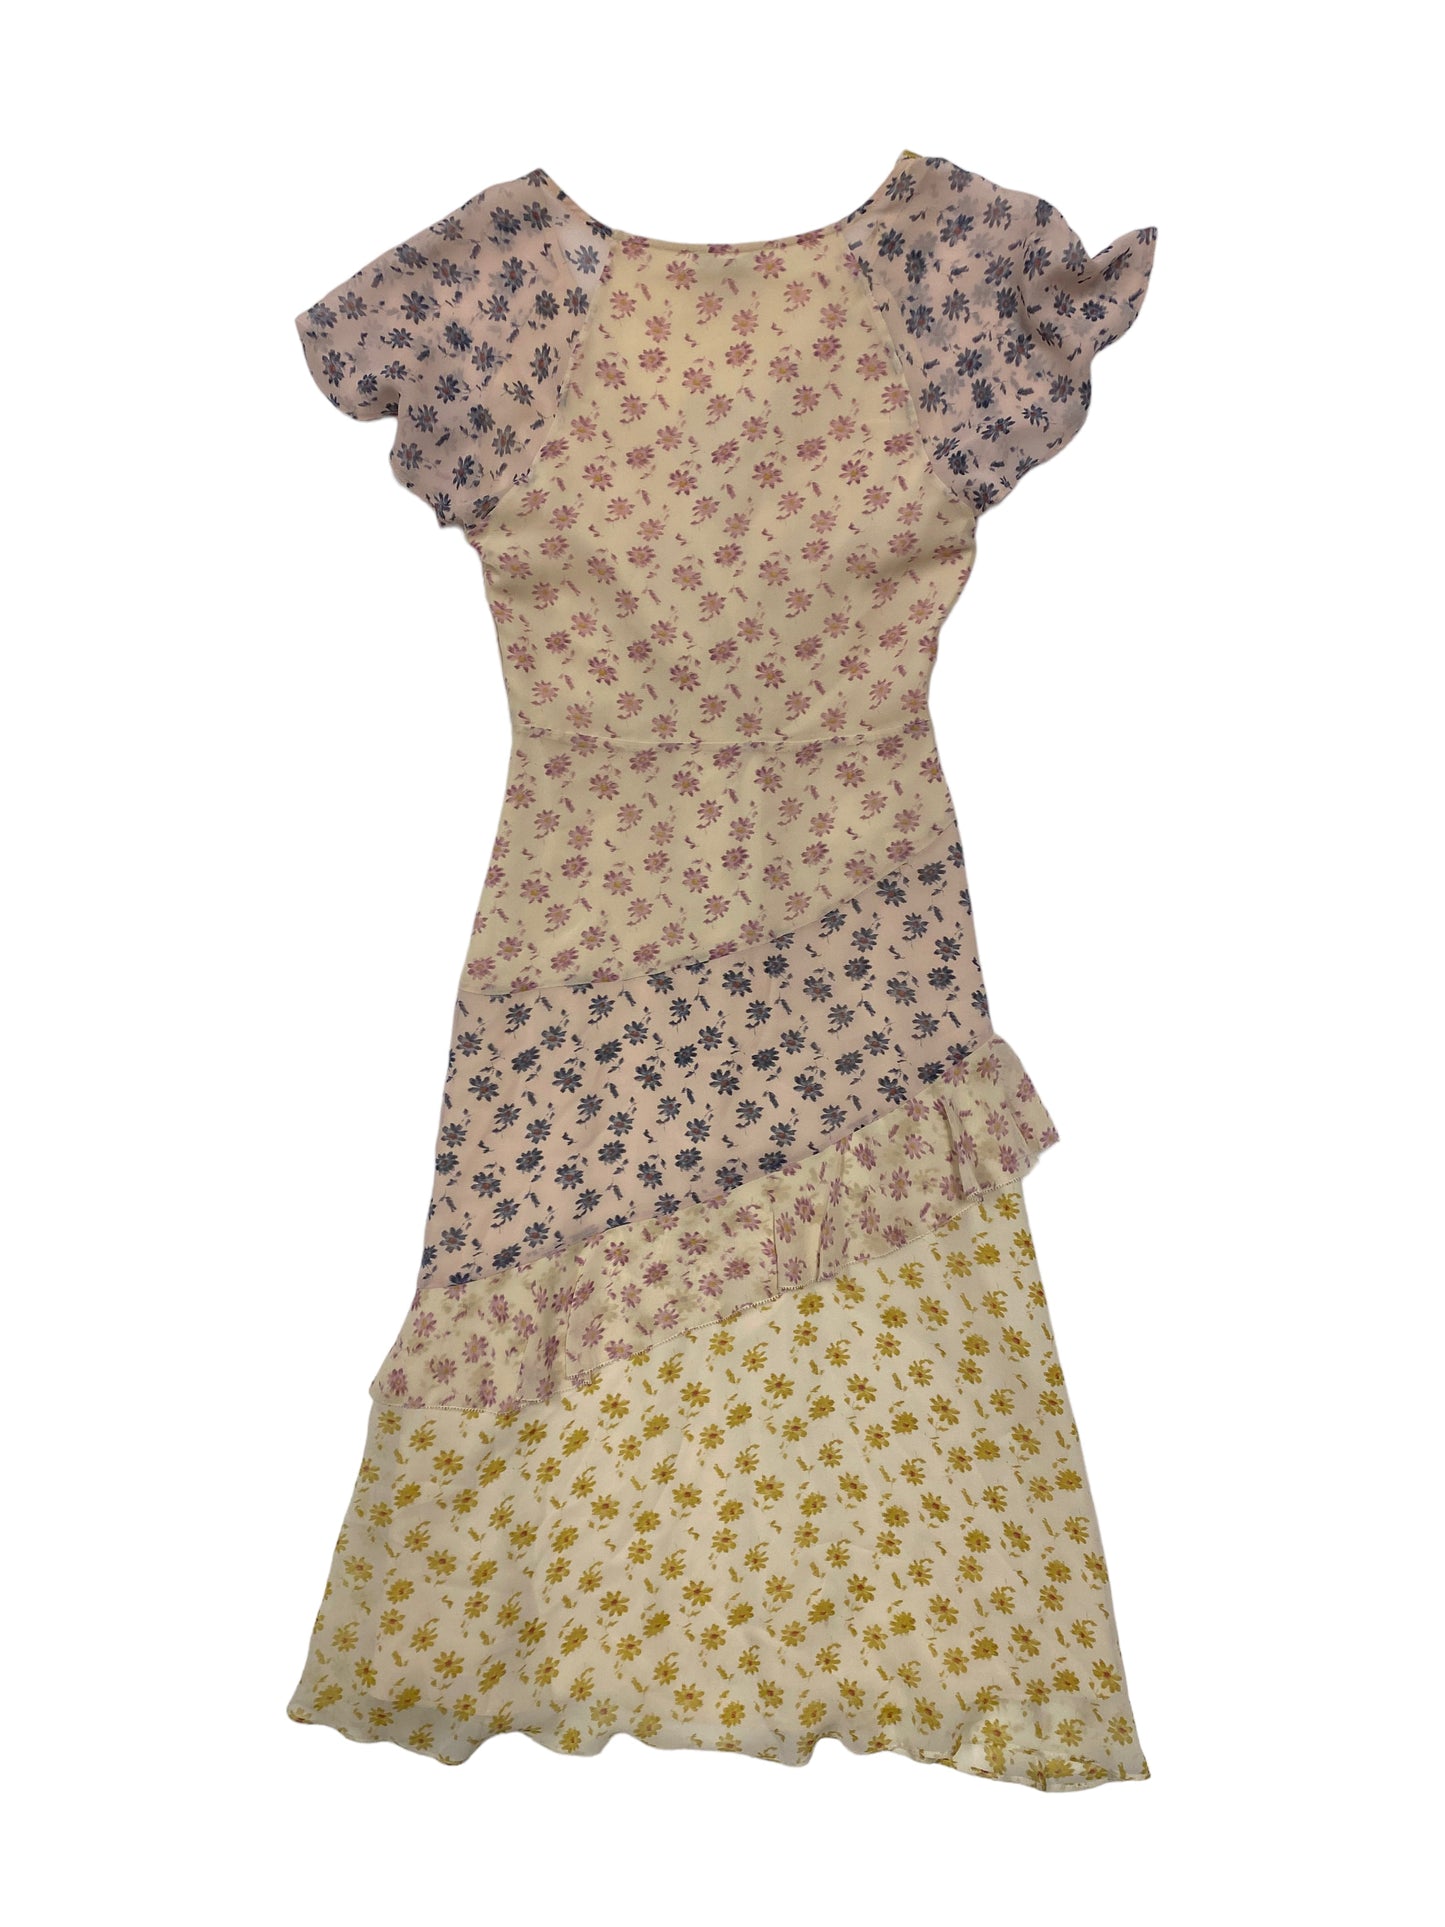 Floral Print Dress Designer Joie, Size 2